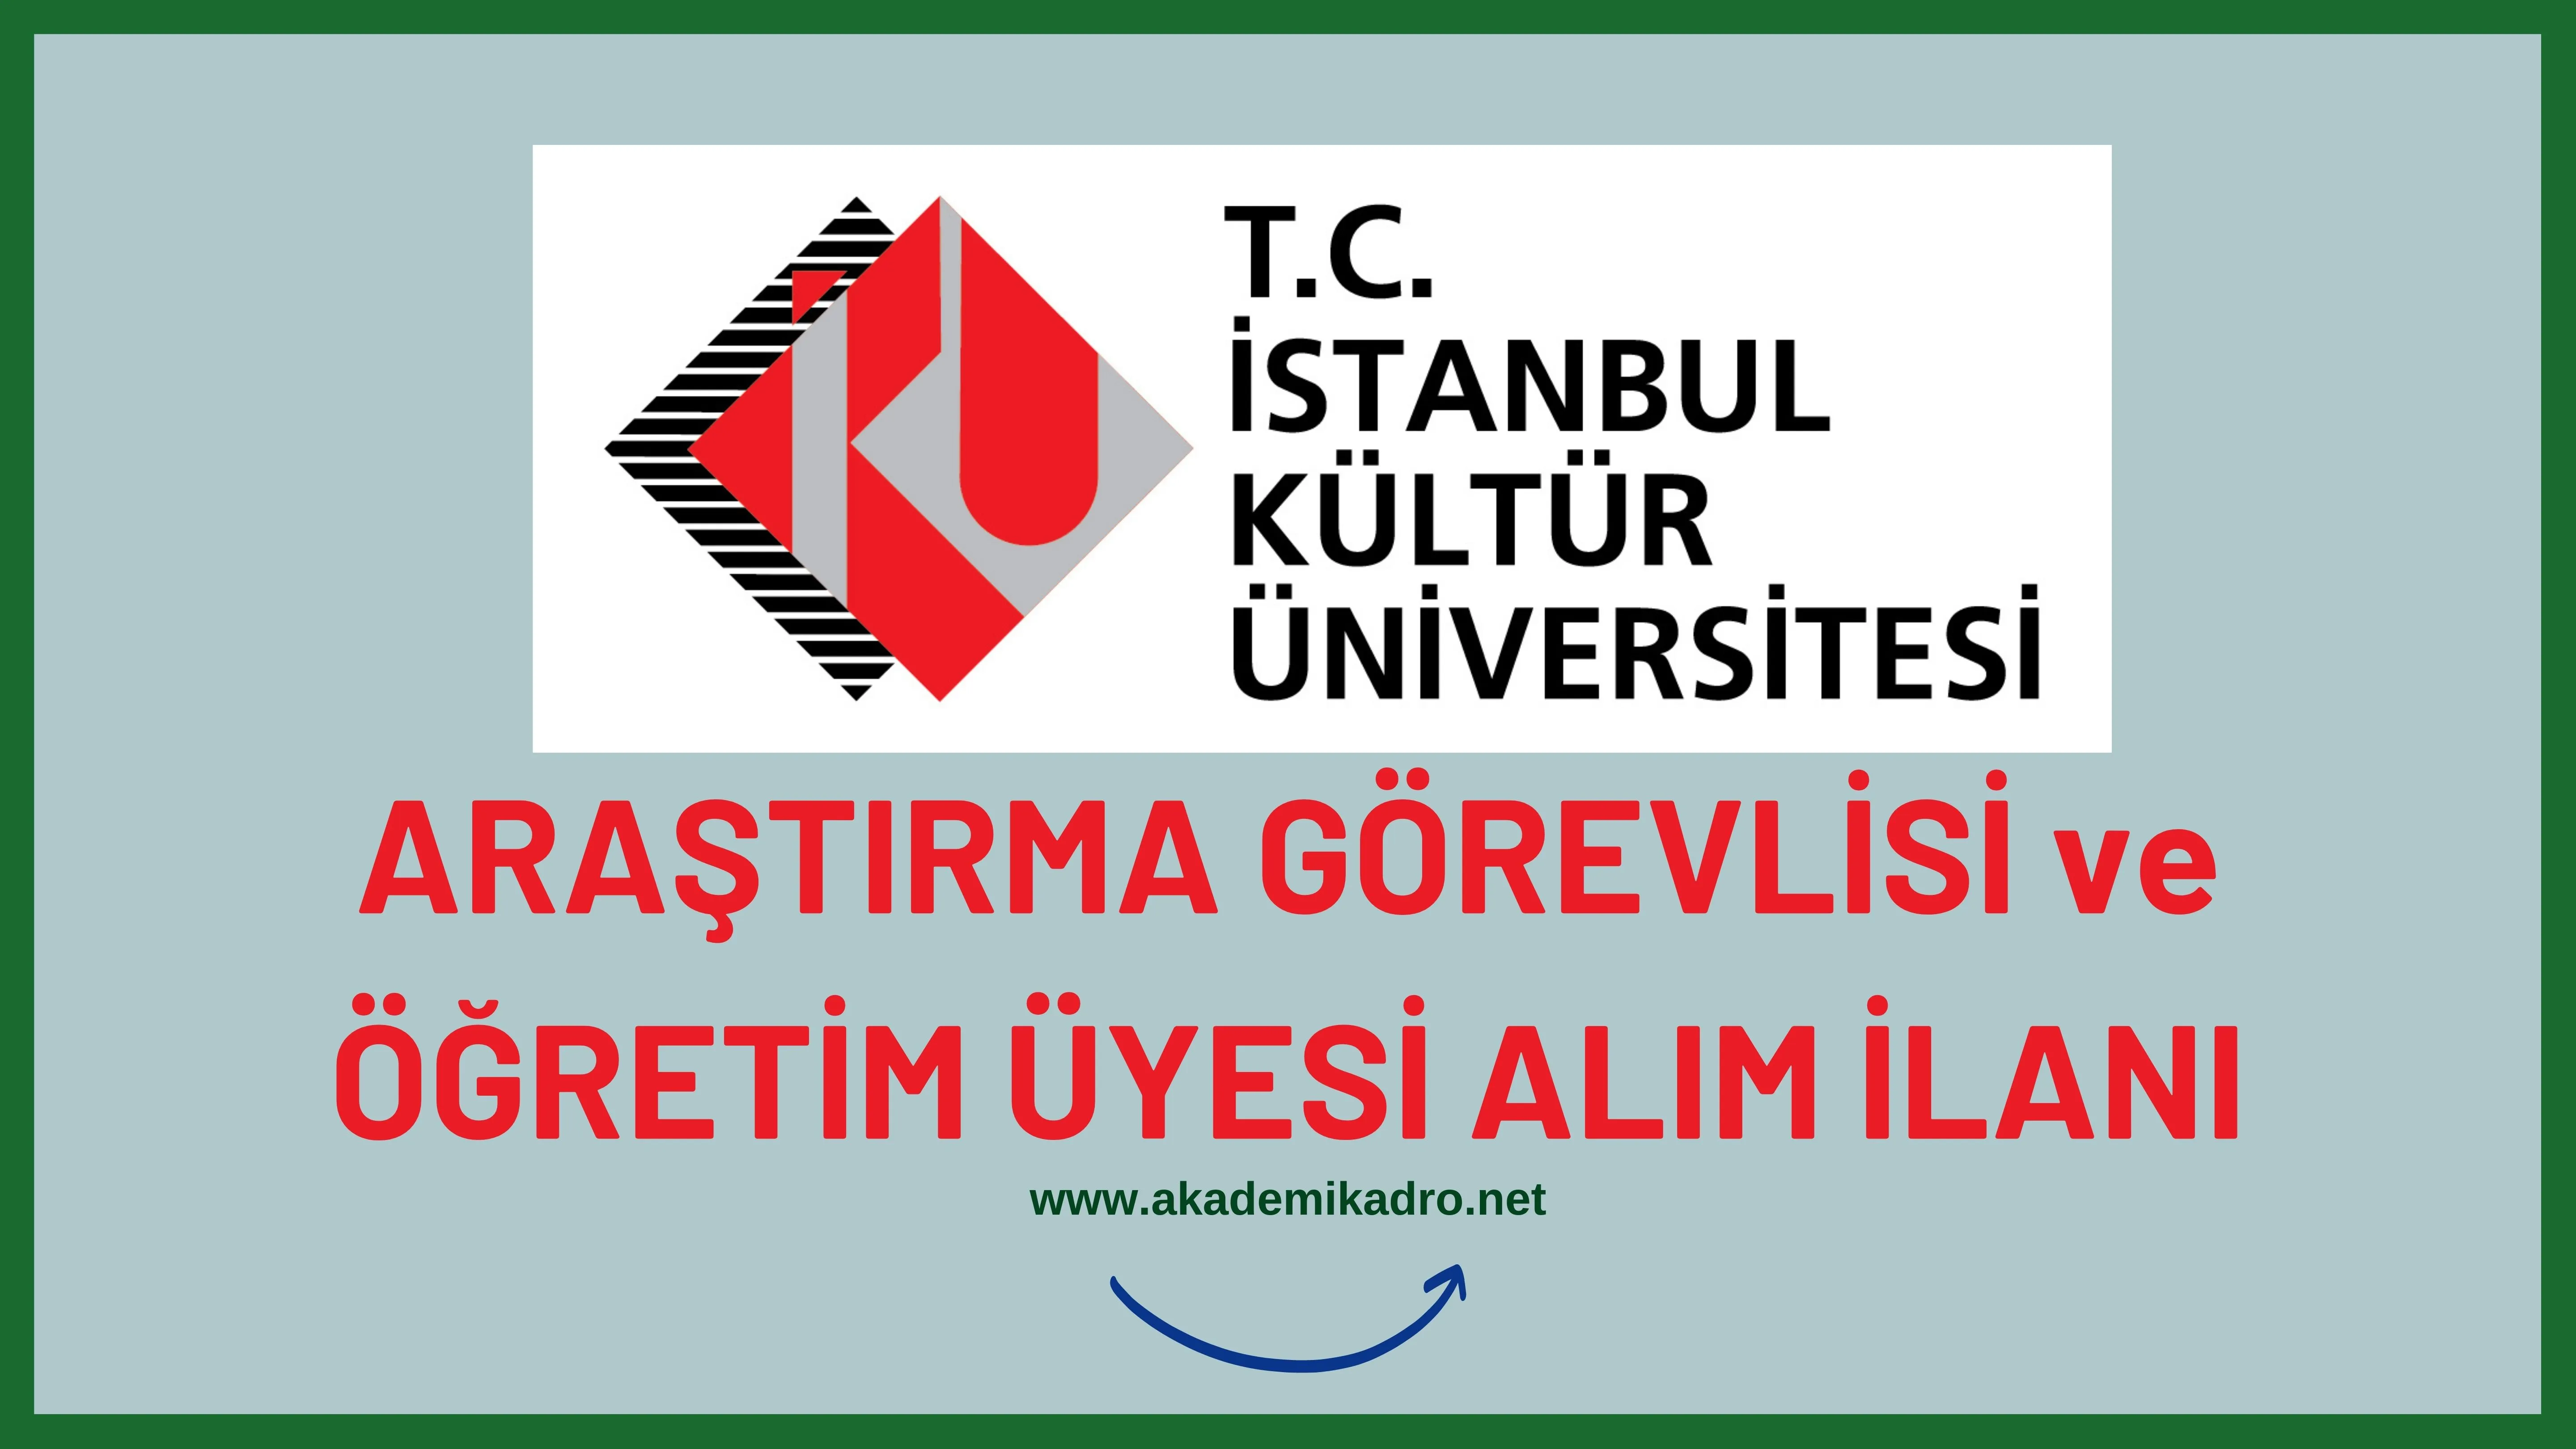 İstanbul Kültür Üniversitesi 2 Araştırma Görevlisi alacaktır. Son başvuru tarihi 17 Şubat 2023